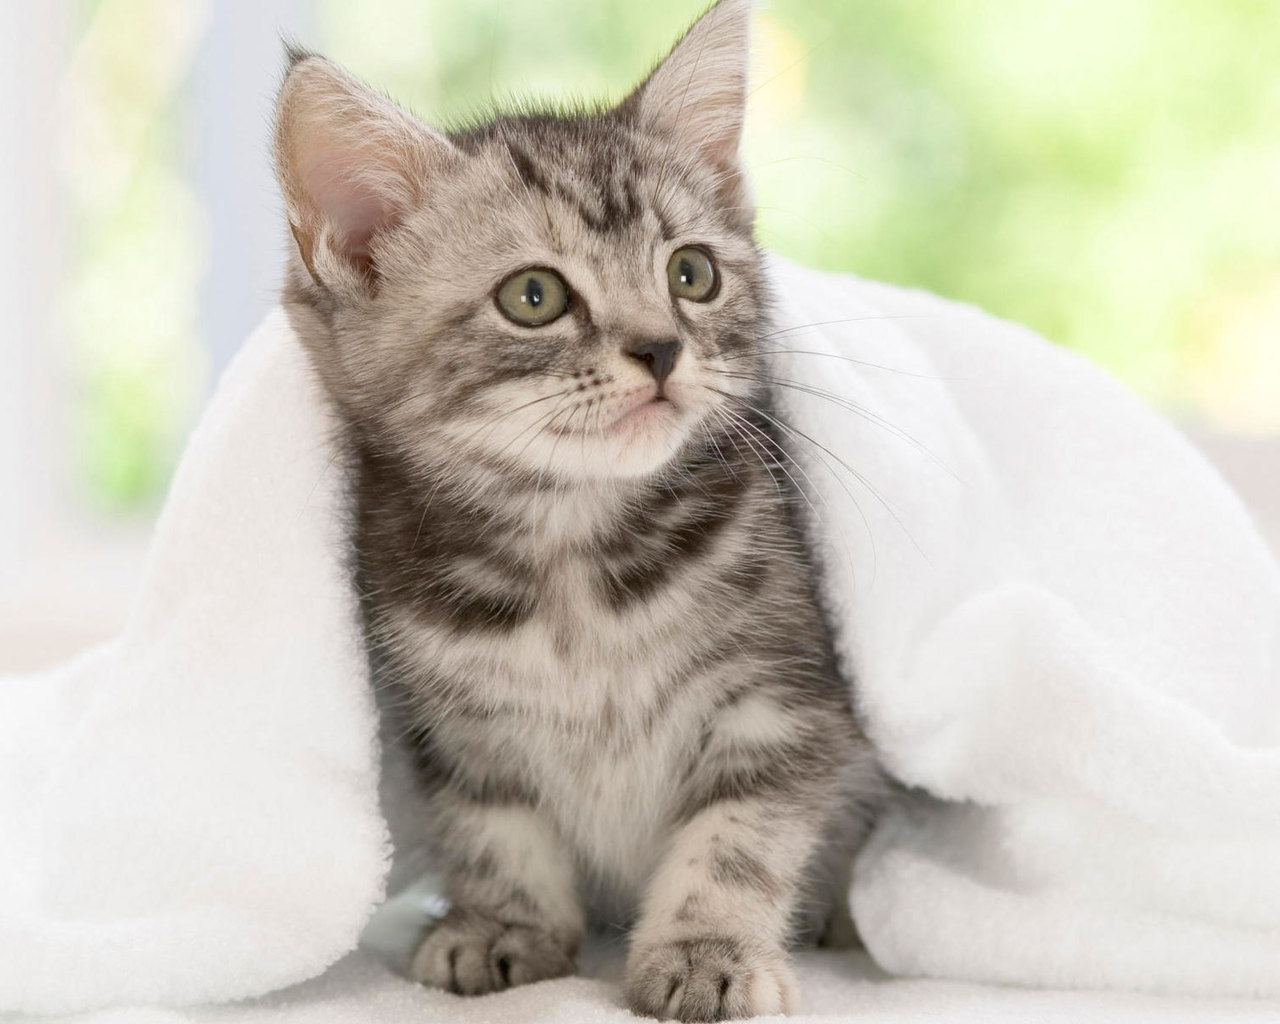 American Shorthair Kitten for 1280 x 1024 resolution